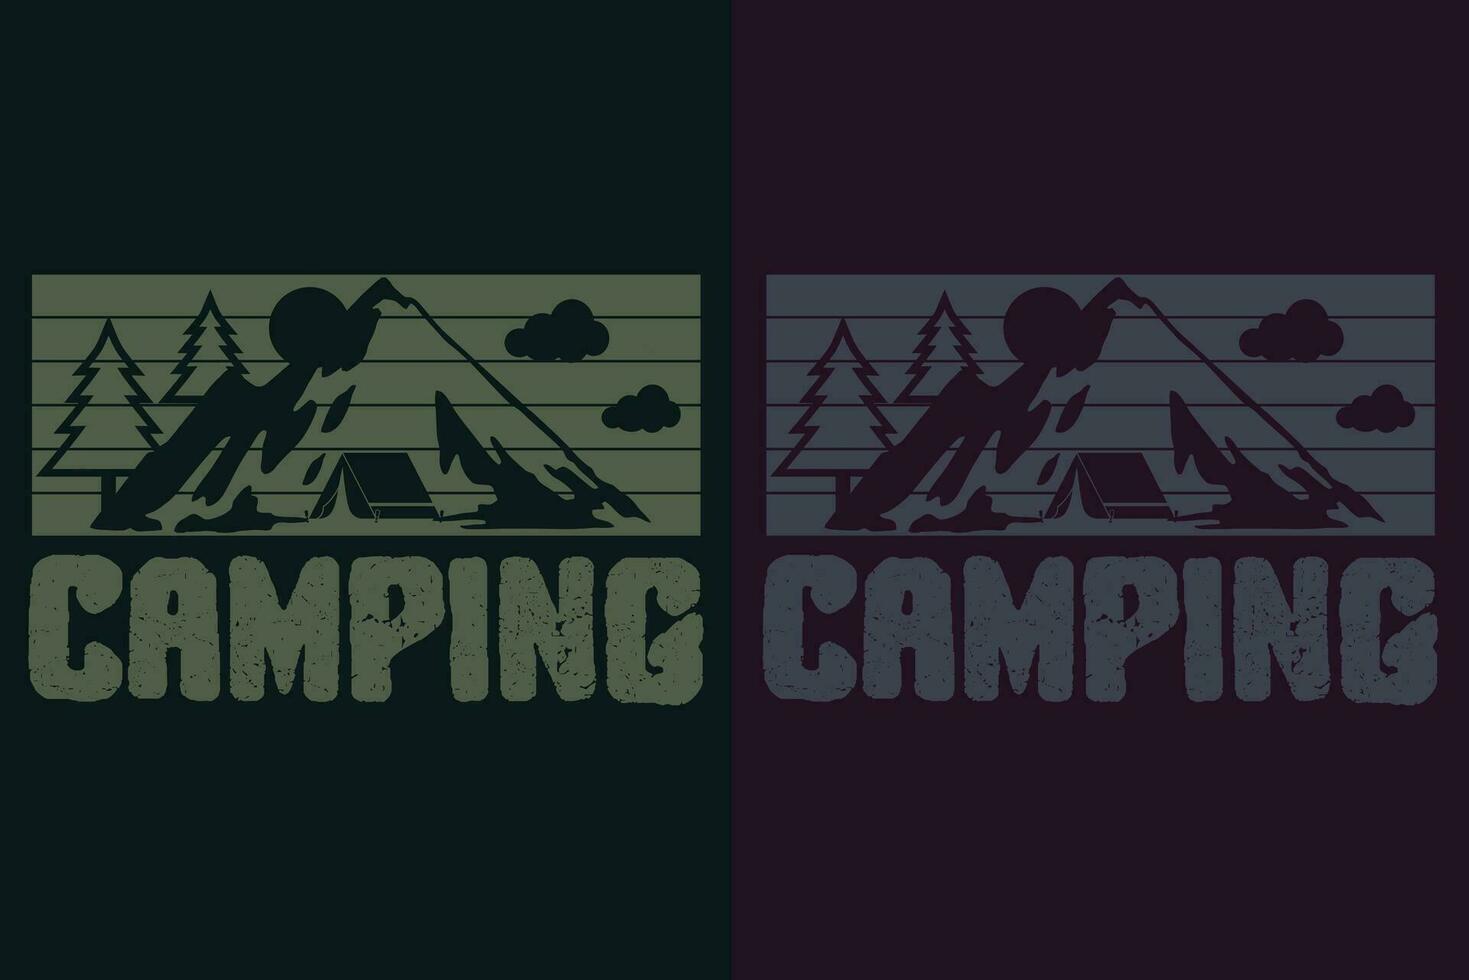 Camping Shirt, Camping Shirt, Outdoor Shirt, Mountain Shirt, Camping Lover Shirt, Adventure Shirt, Travel Shirt, Camping Gift, Camper, Camper Gift, Camping Group, Nature Lover Shirt vector